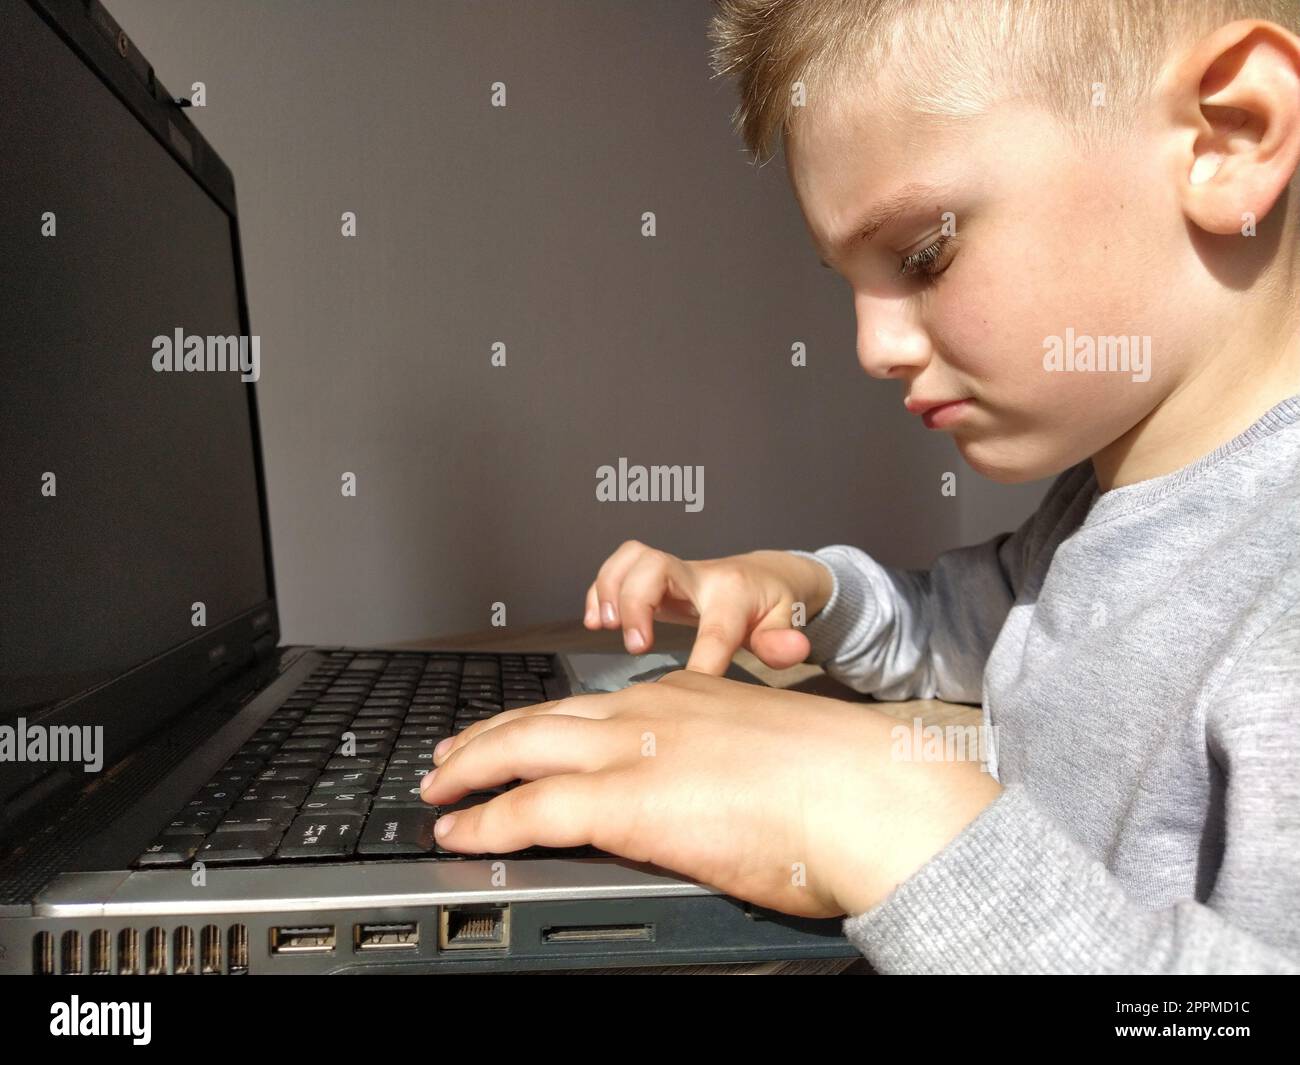 Der kleine Junge mit dem Computer. Der Junge schaltet den Laptop ein. Die schwarze Tastatur. Ein blondes Kind. Nachdenkliches Gesicht. Bildungskonzept. Gadget-Suchtbegriff Stockfoto